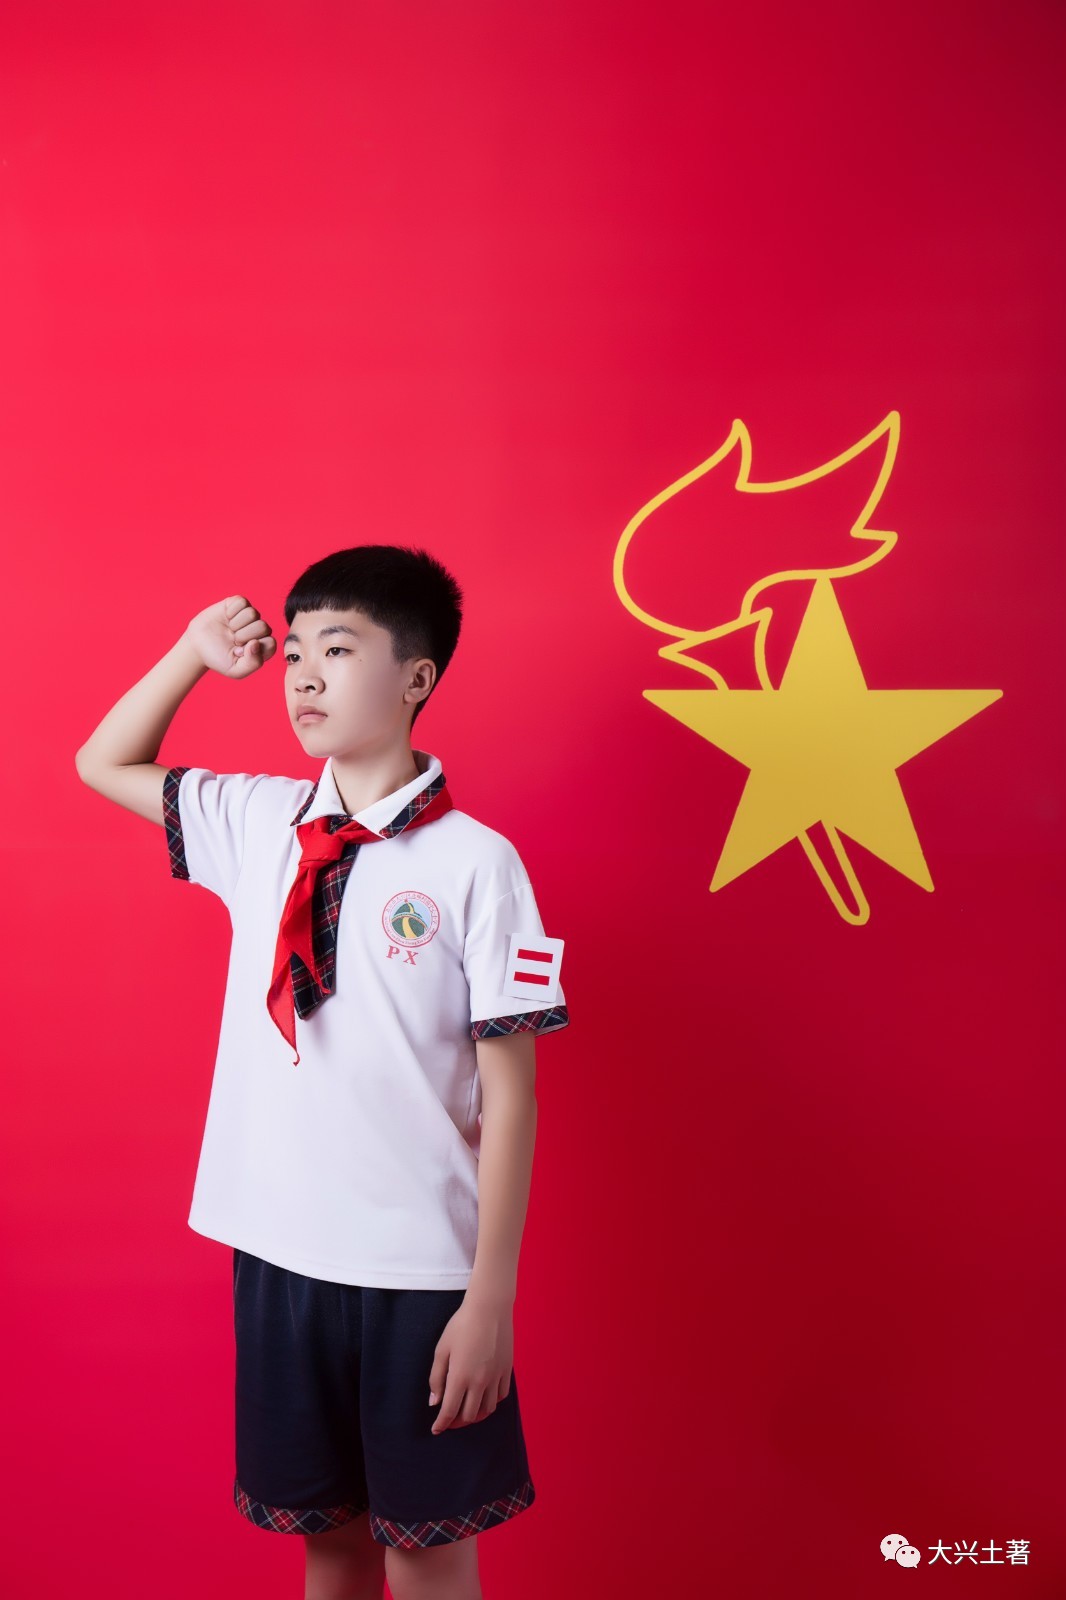 飞扬的红领巾丨照片还能这么拍?北臧村中心小学少先队员风采展示